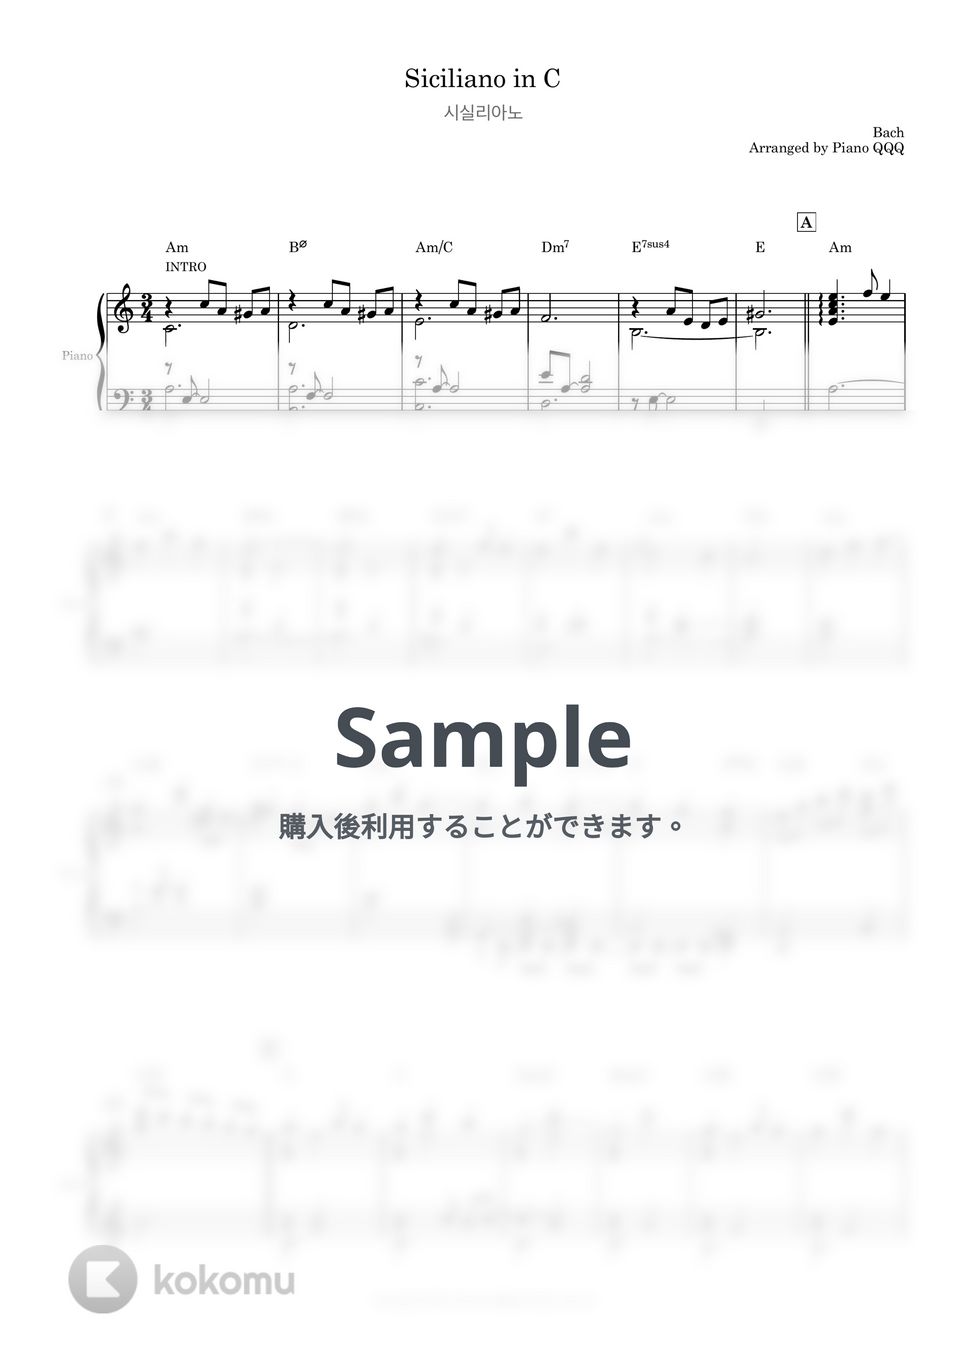 バッハ - シチリアーノ (ピアノ·ソロ·楽譜) by Piano QQQ